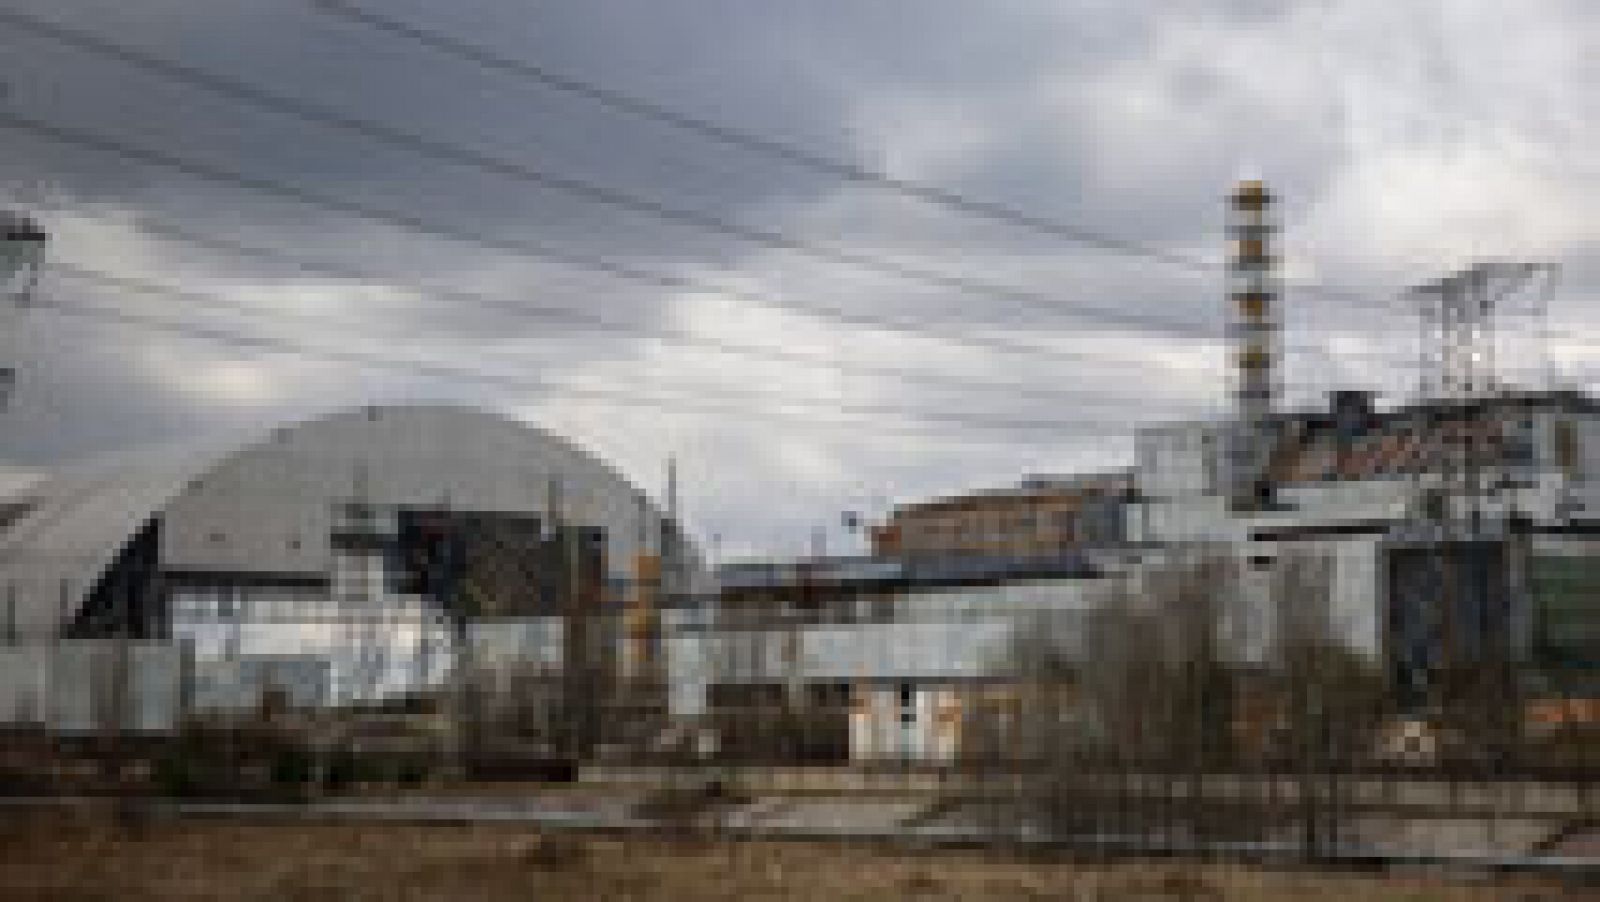 Telediario 1: Un fallo en una prueba de seguridad causó el accidente de Chernóbil, el mayor desastre nuclear de la historia | RTVE Play